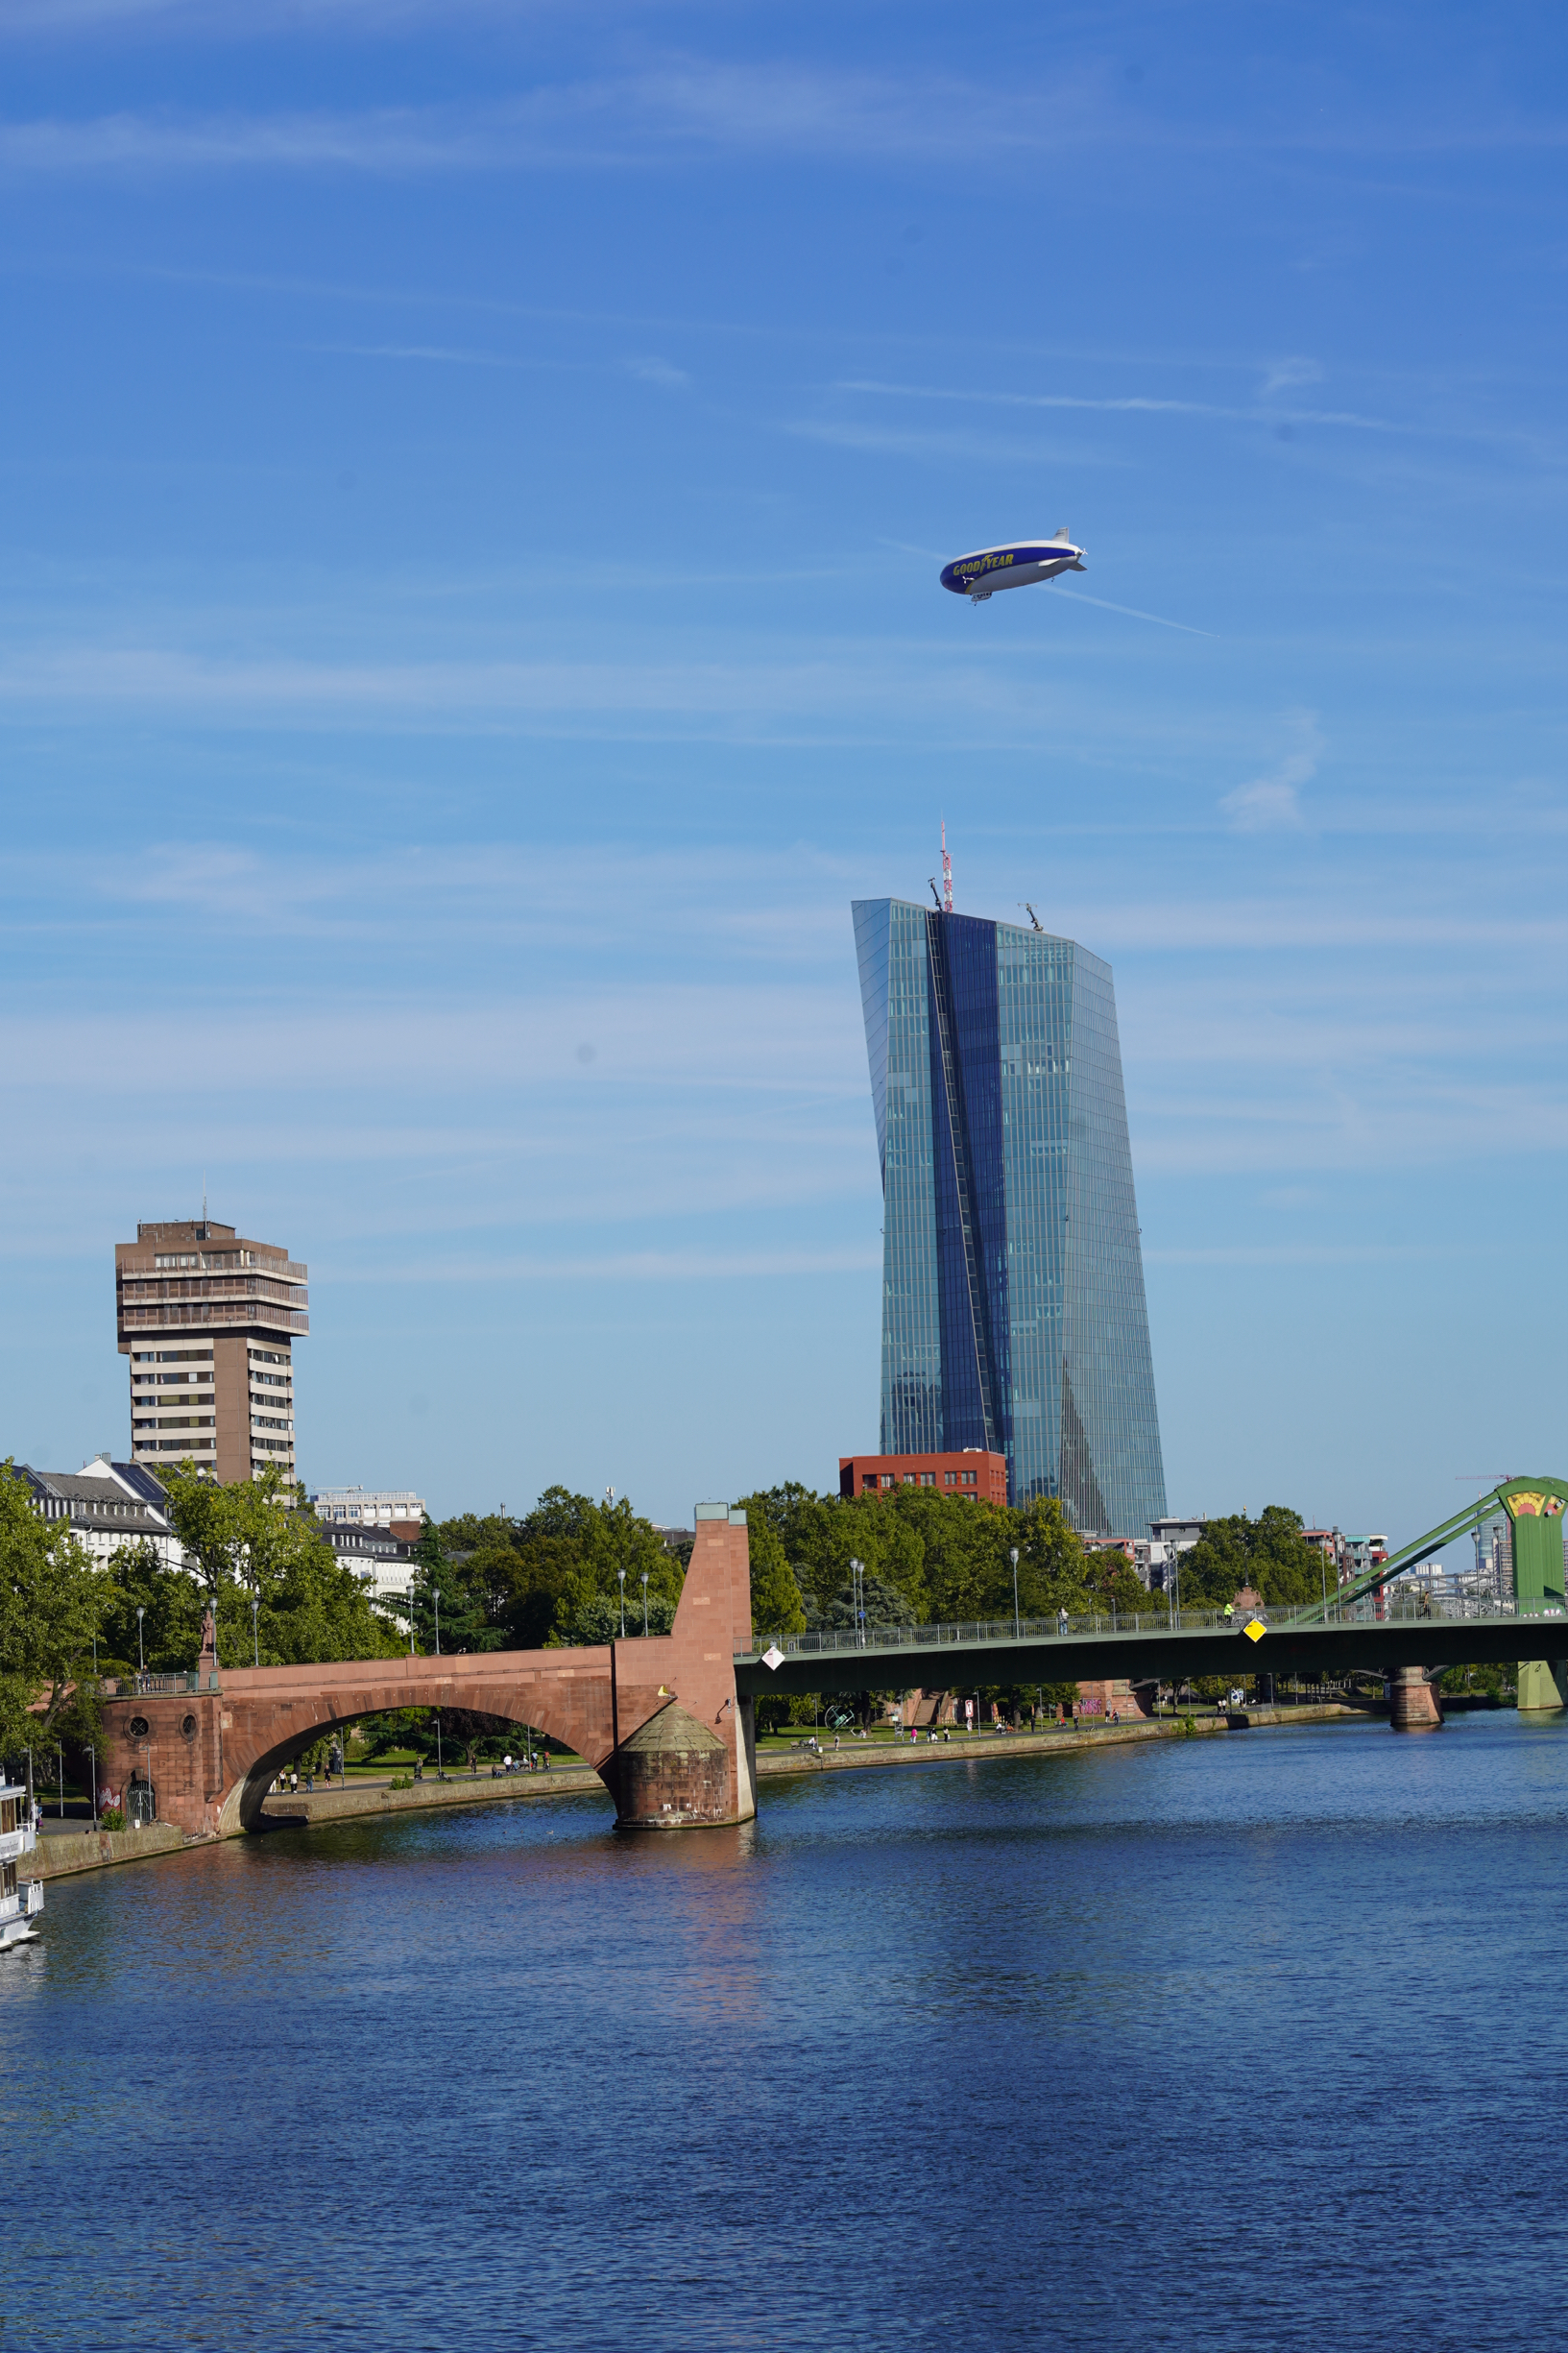 美因河是莱茵河的支流，被称作法兰克福的母亲河。  城市地标铁桥横跨美茵河，连接法兰克福的南岸老城区和